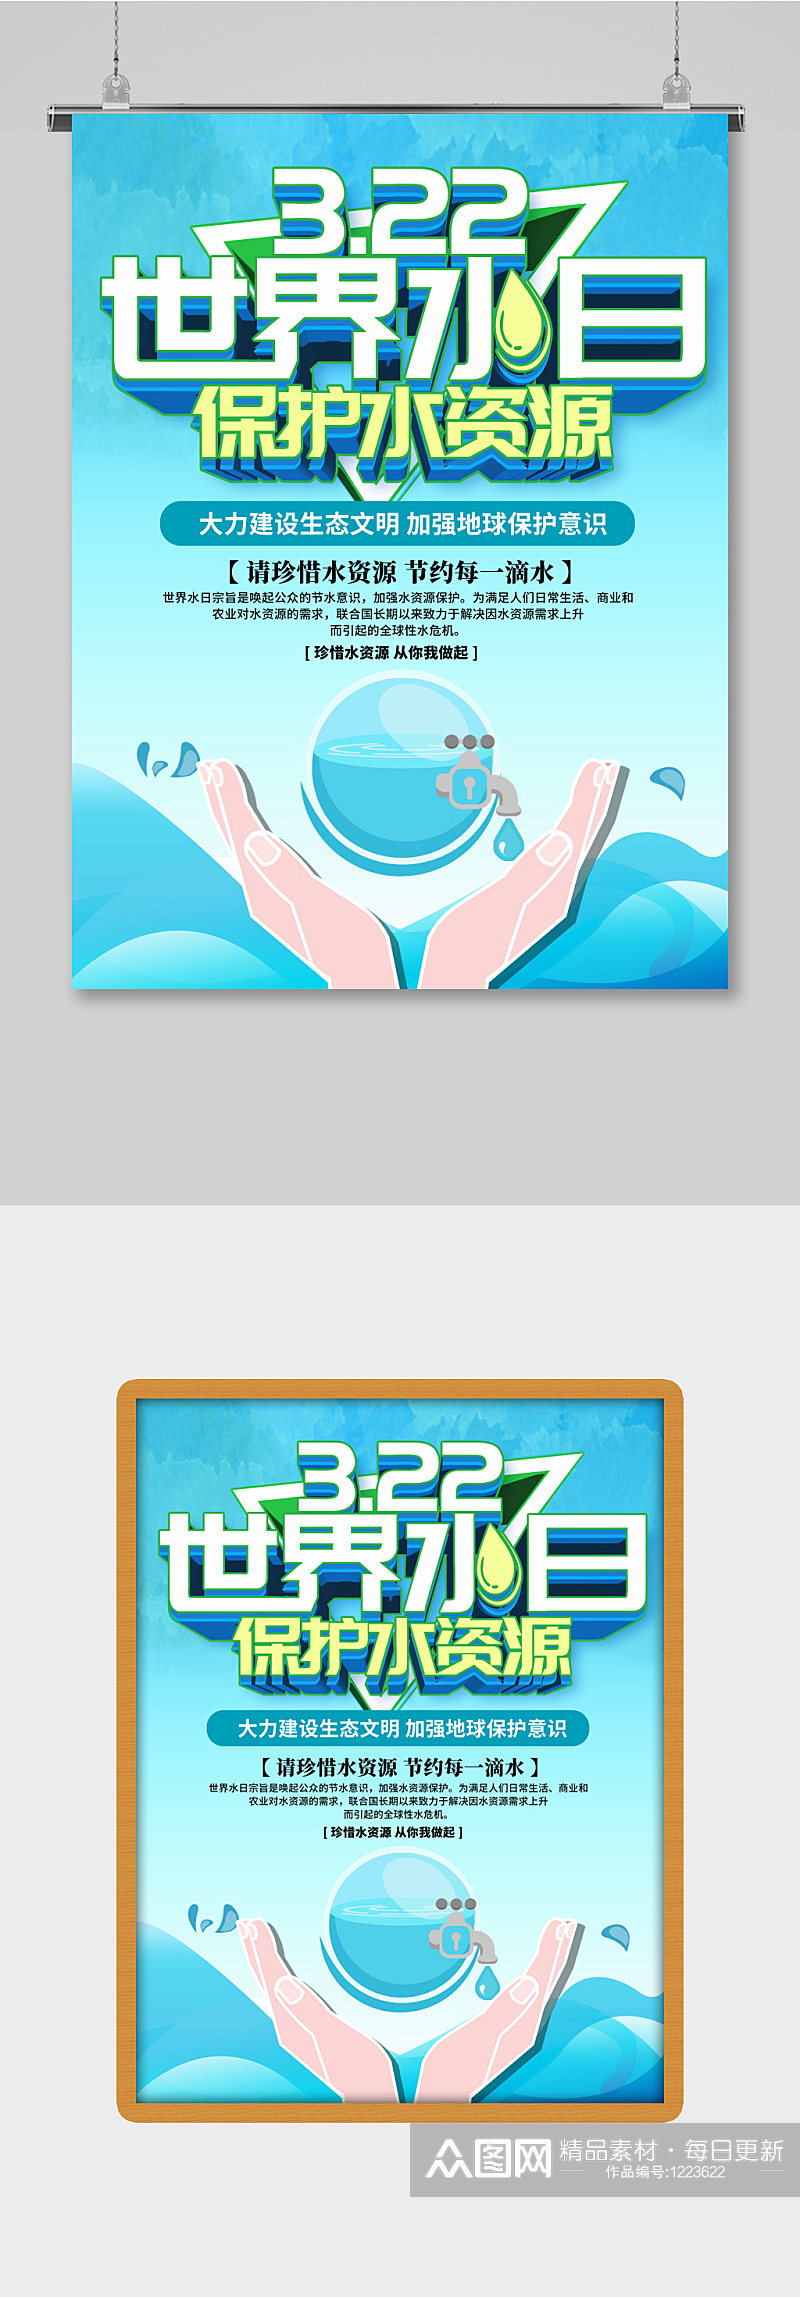 蓝色小清新3.22世界水日节日展板海报素材